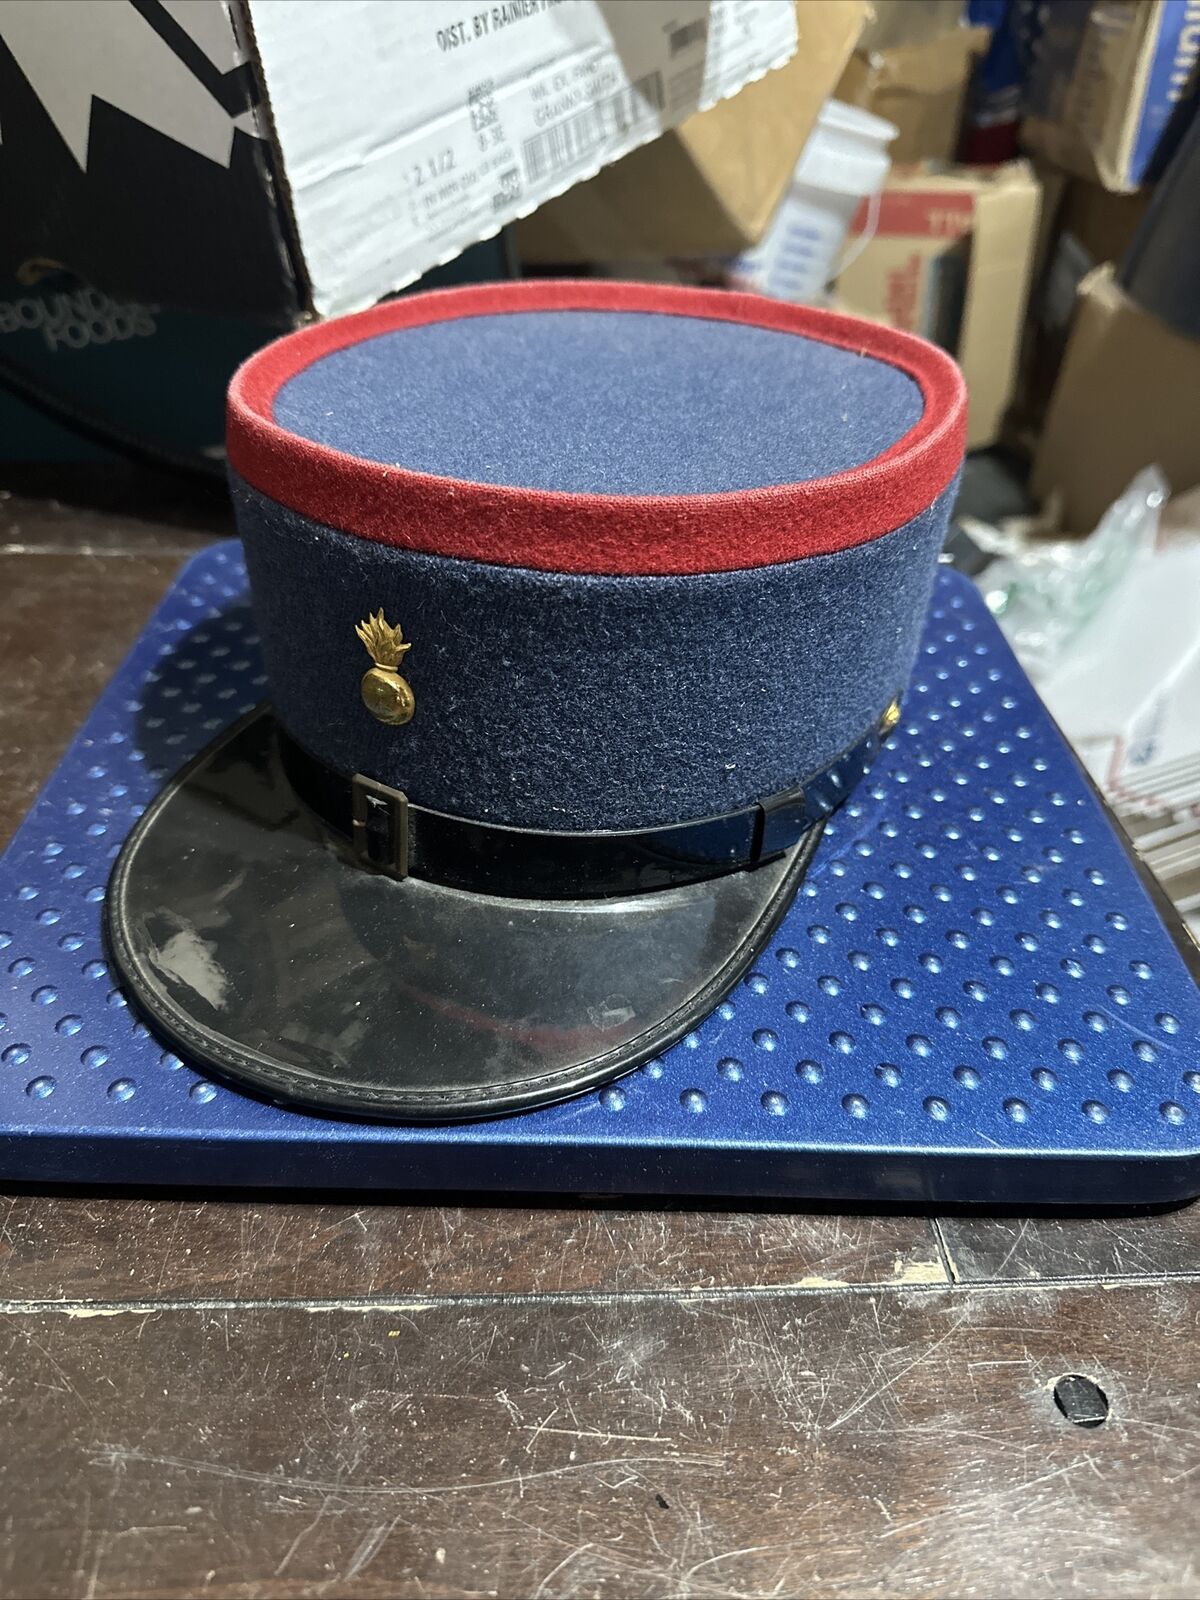 Vintage French Firefighter Kepi Uniform Hat Cap France with Emblem